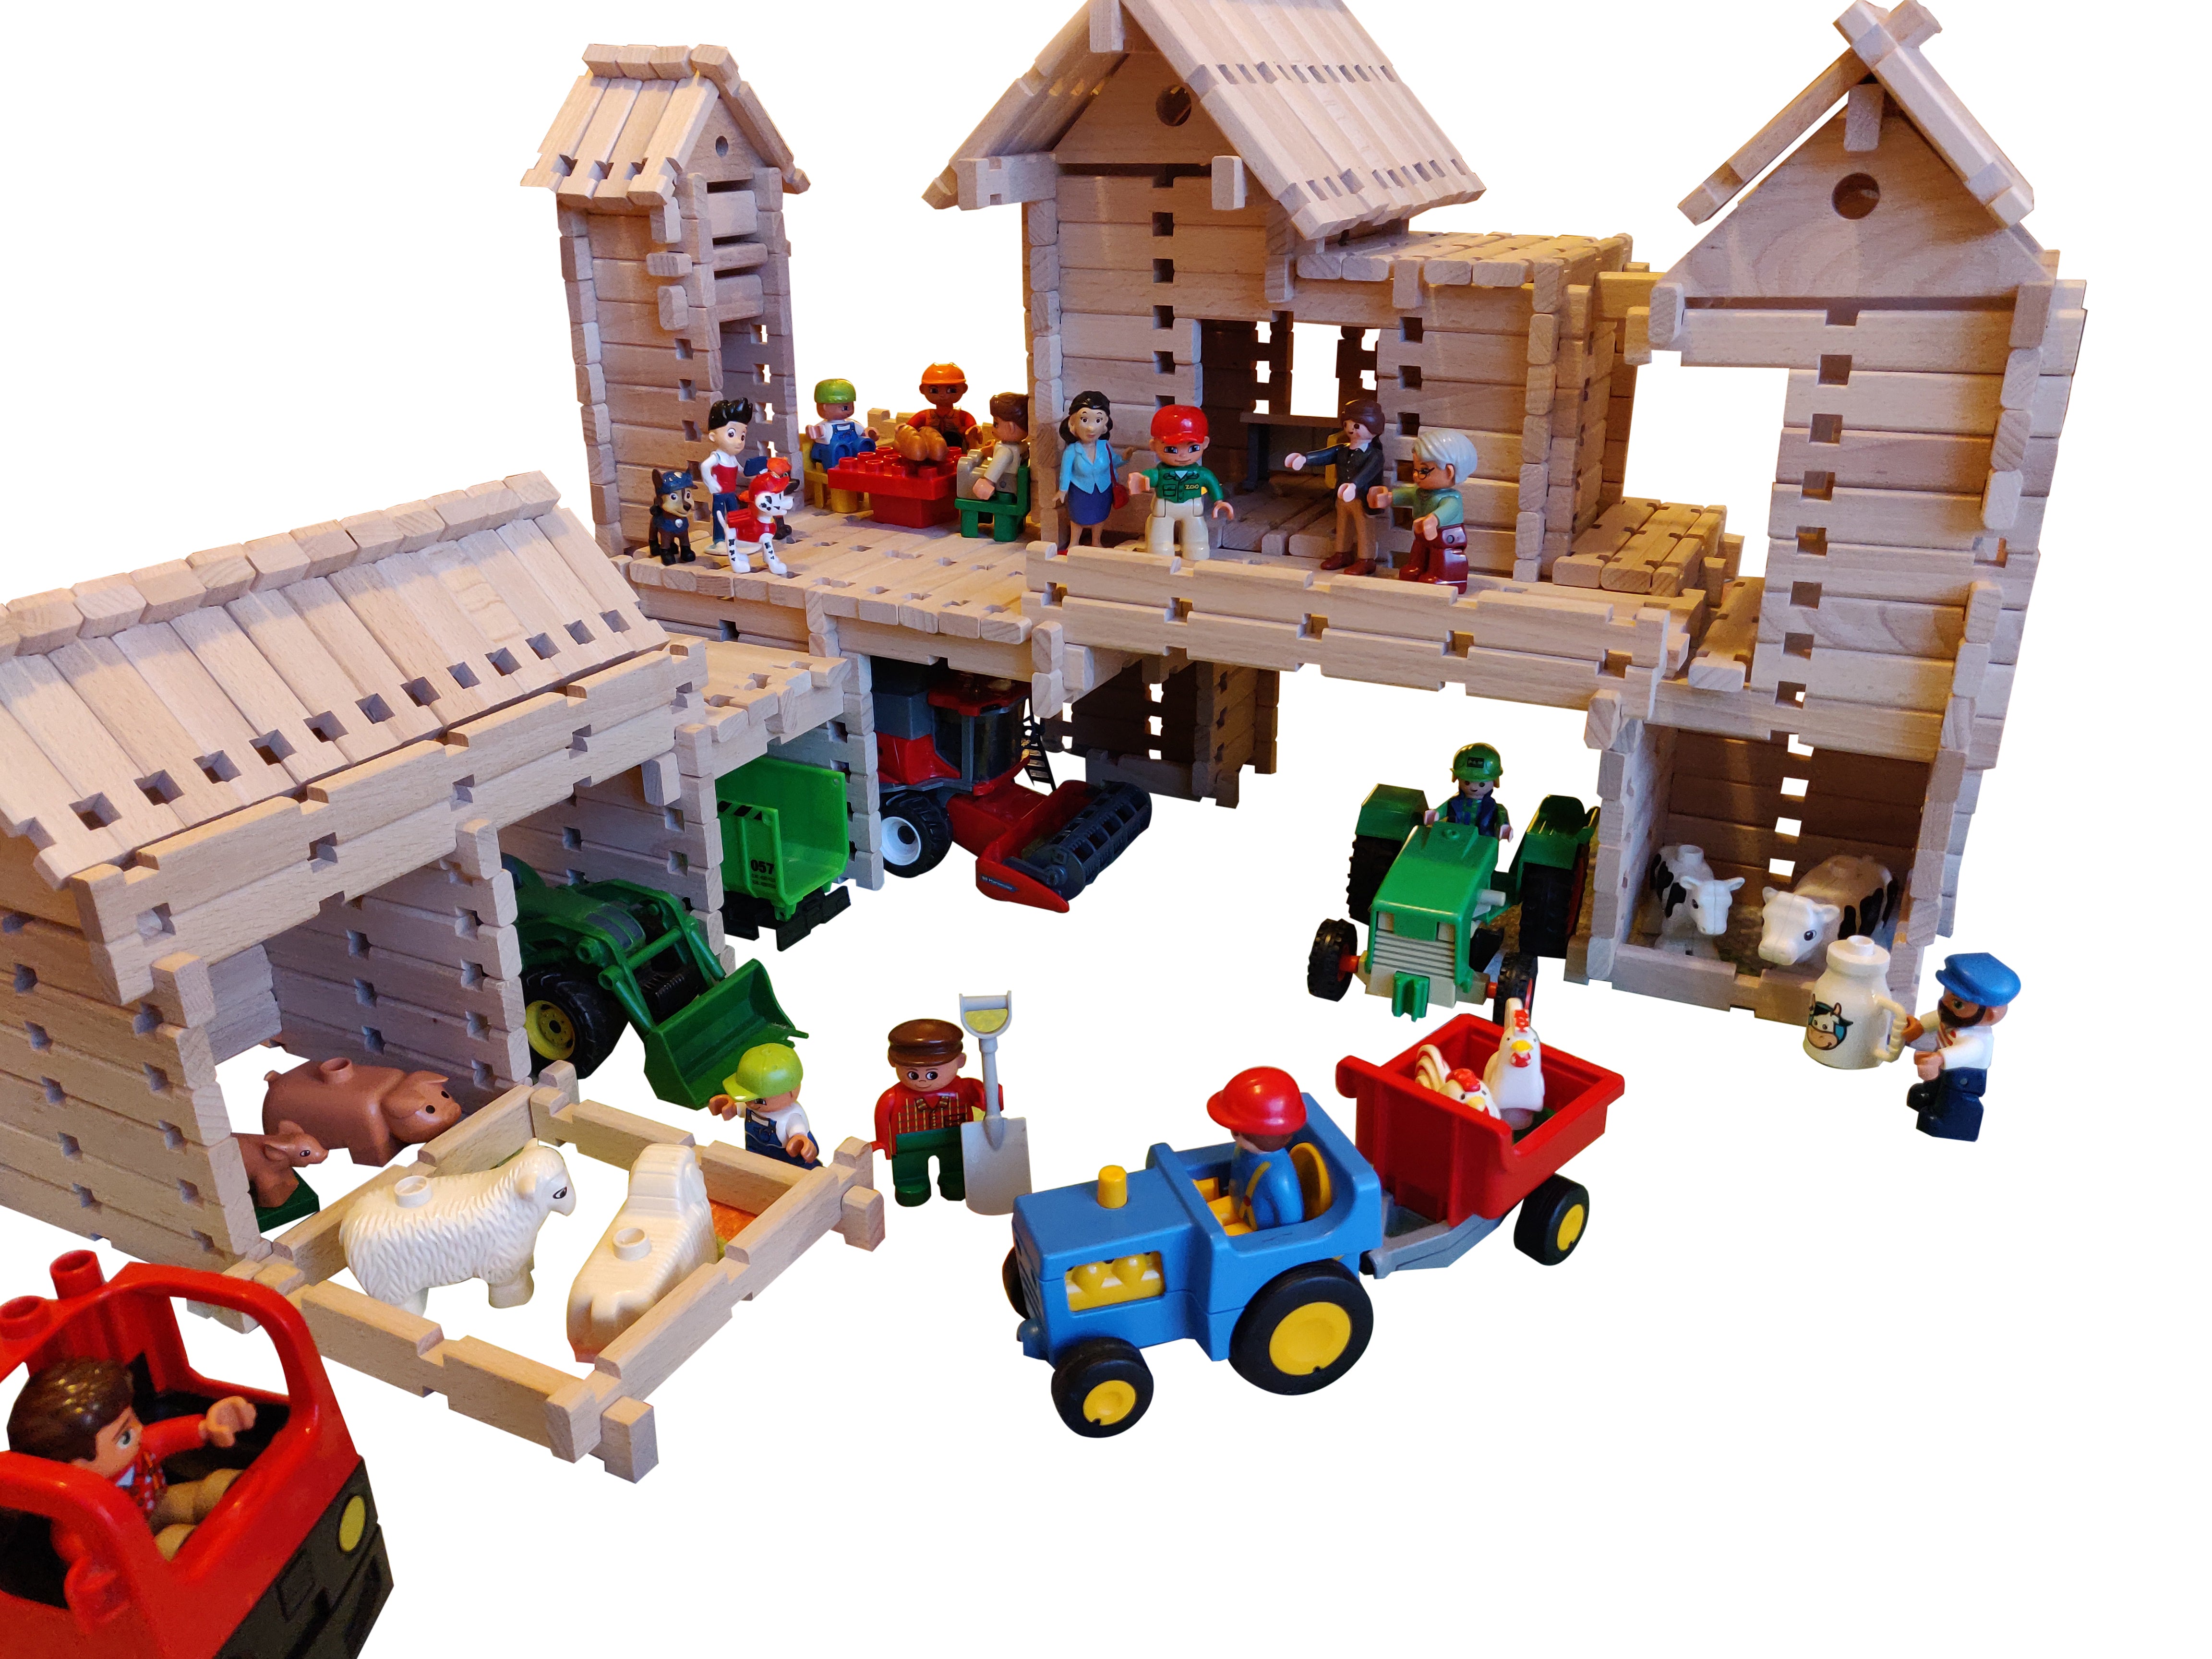 LOGO-BURG leksakssats i trä, byggklossar i trä, byggklossar i trä